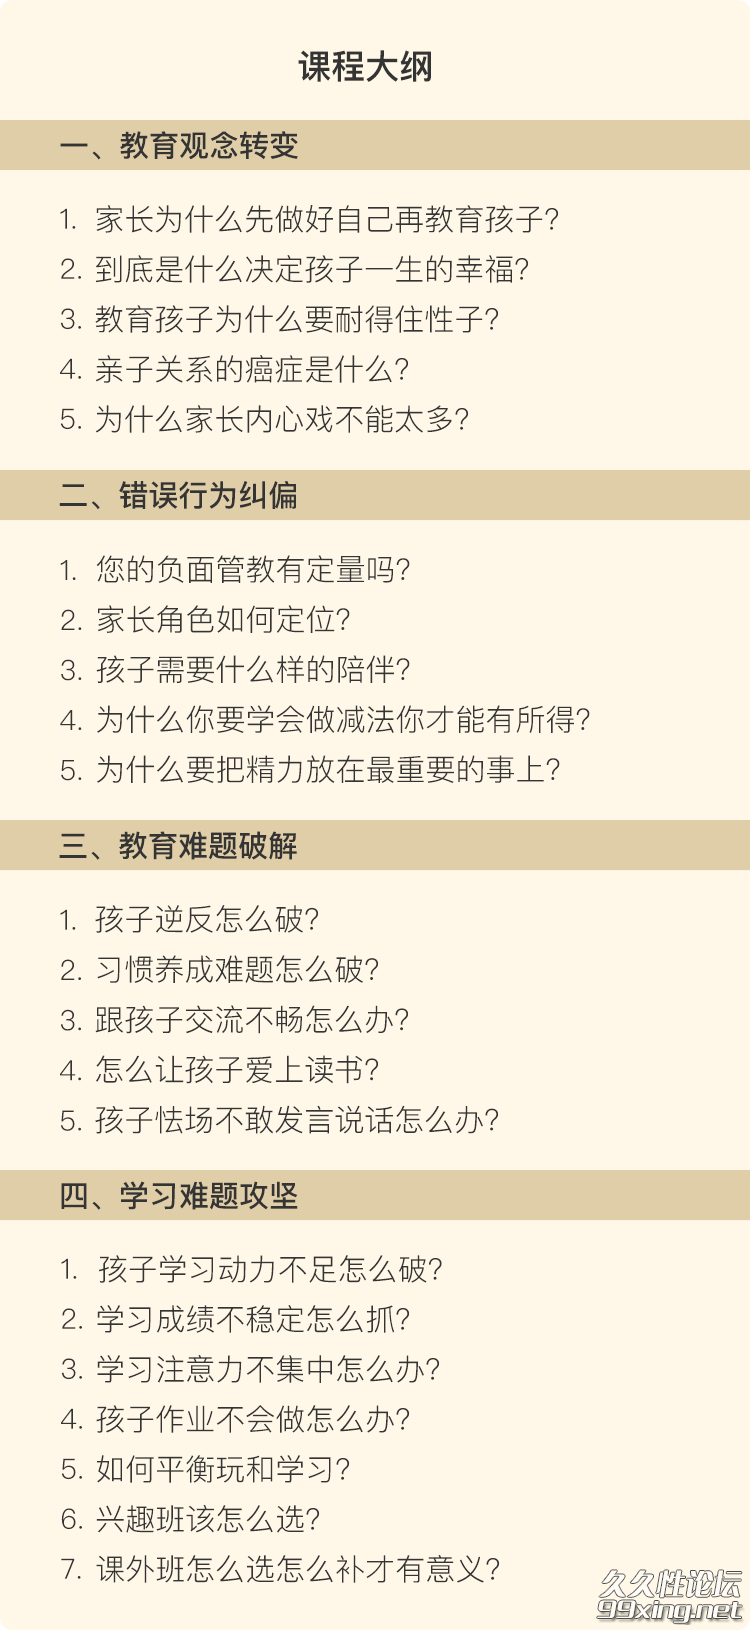 搞定不爱学习的孩子：北京四中名师的 23 个教育方法.png